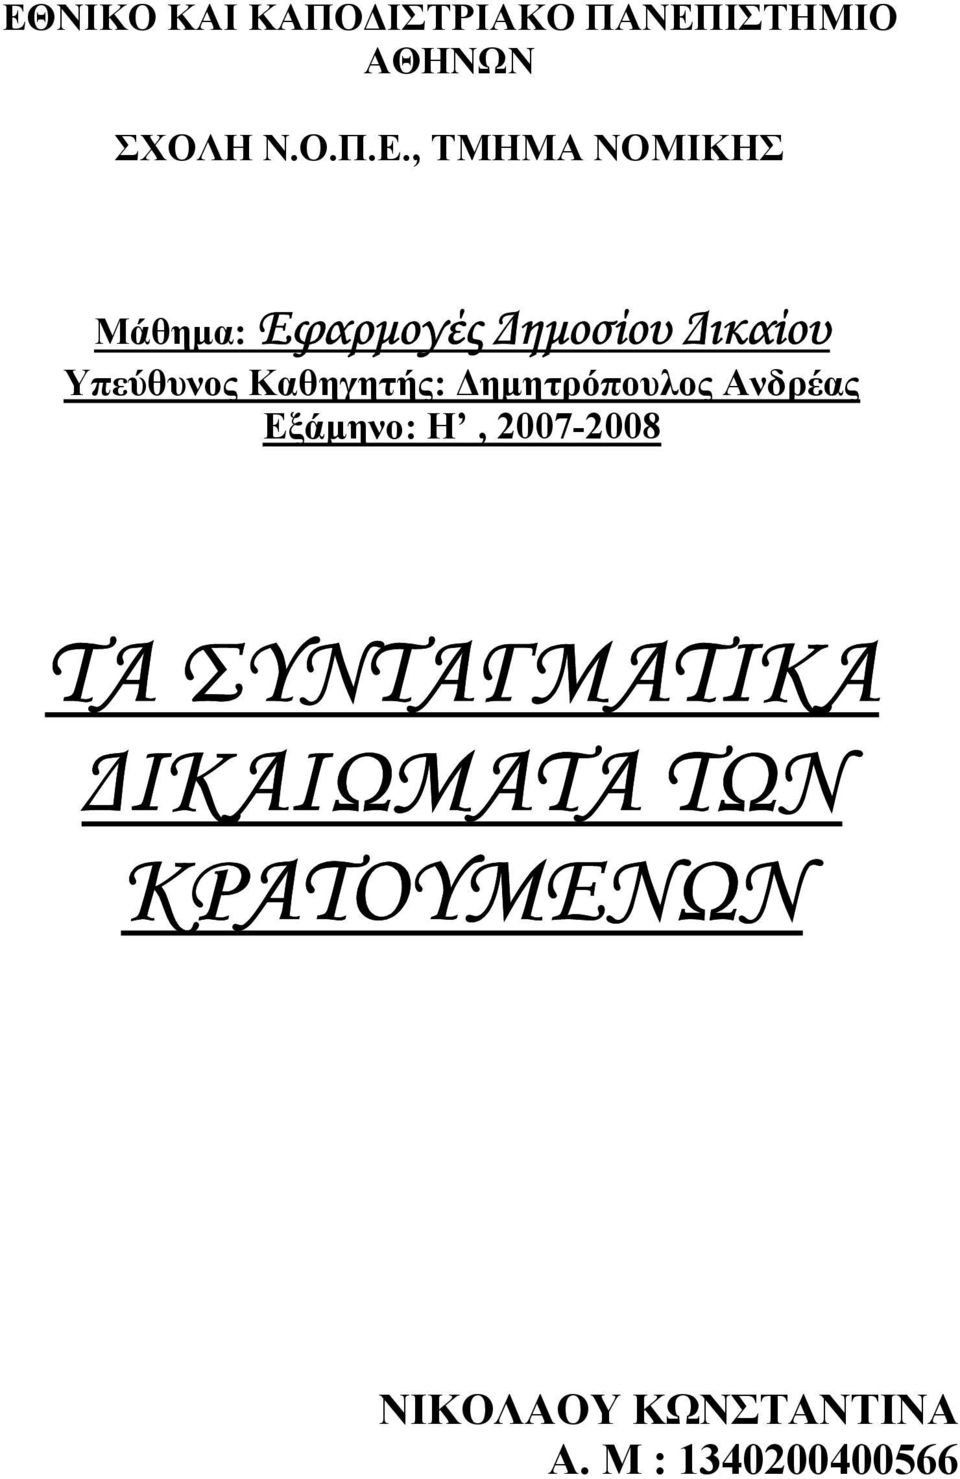 Καθηγητής: ηµητρόπουλος Ανδρέας Εξάµηνο: Η, 2007-2008 ΤΑ